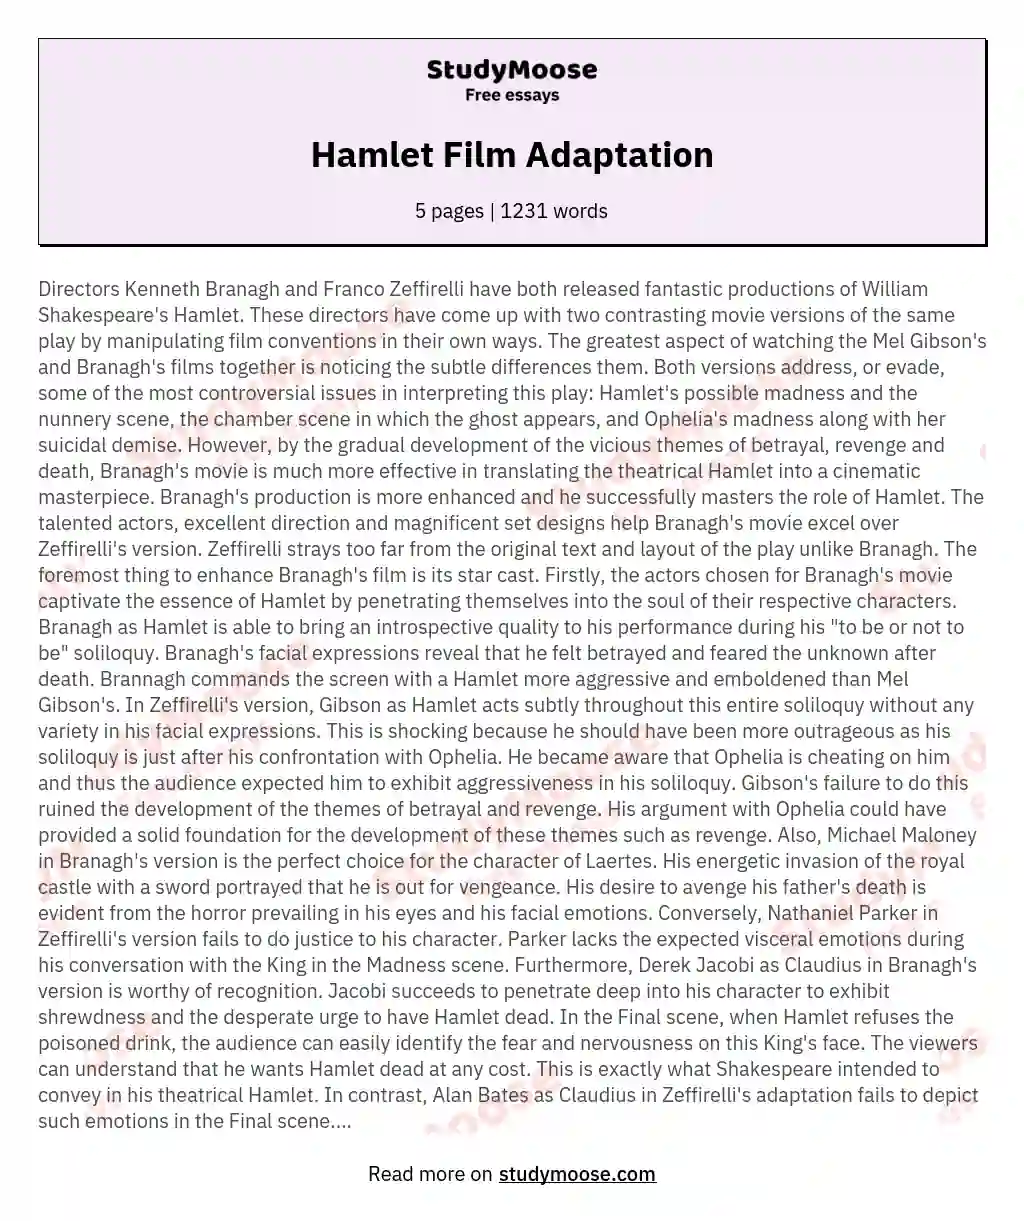 Hamlet Film Adaptation essay